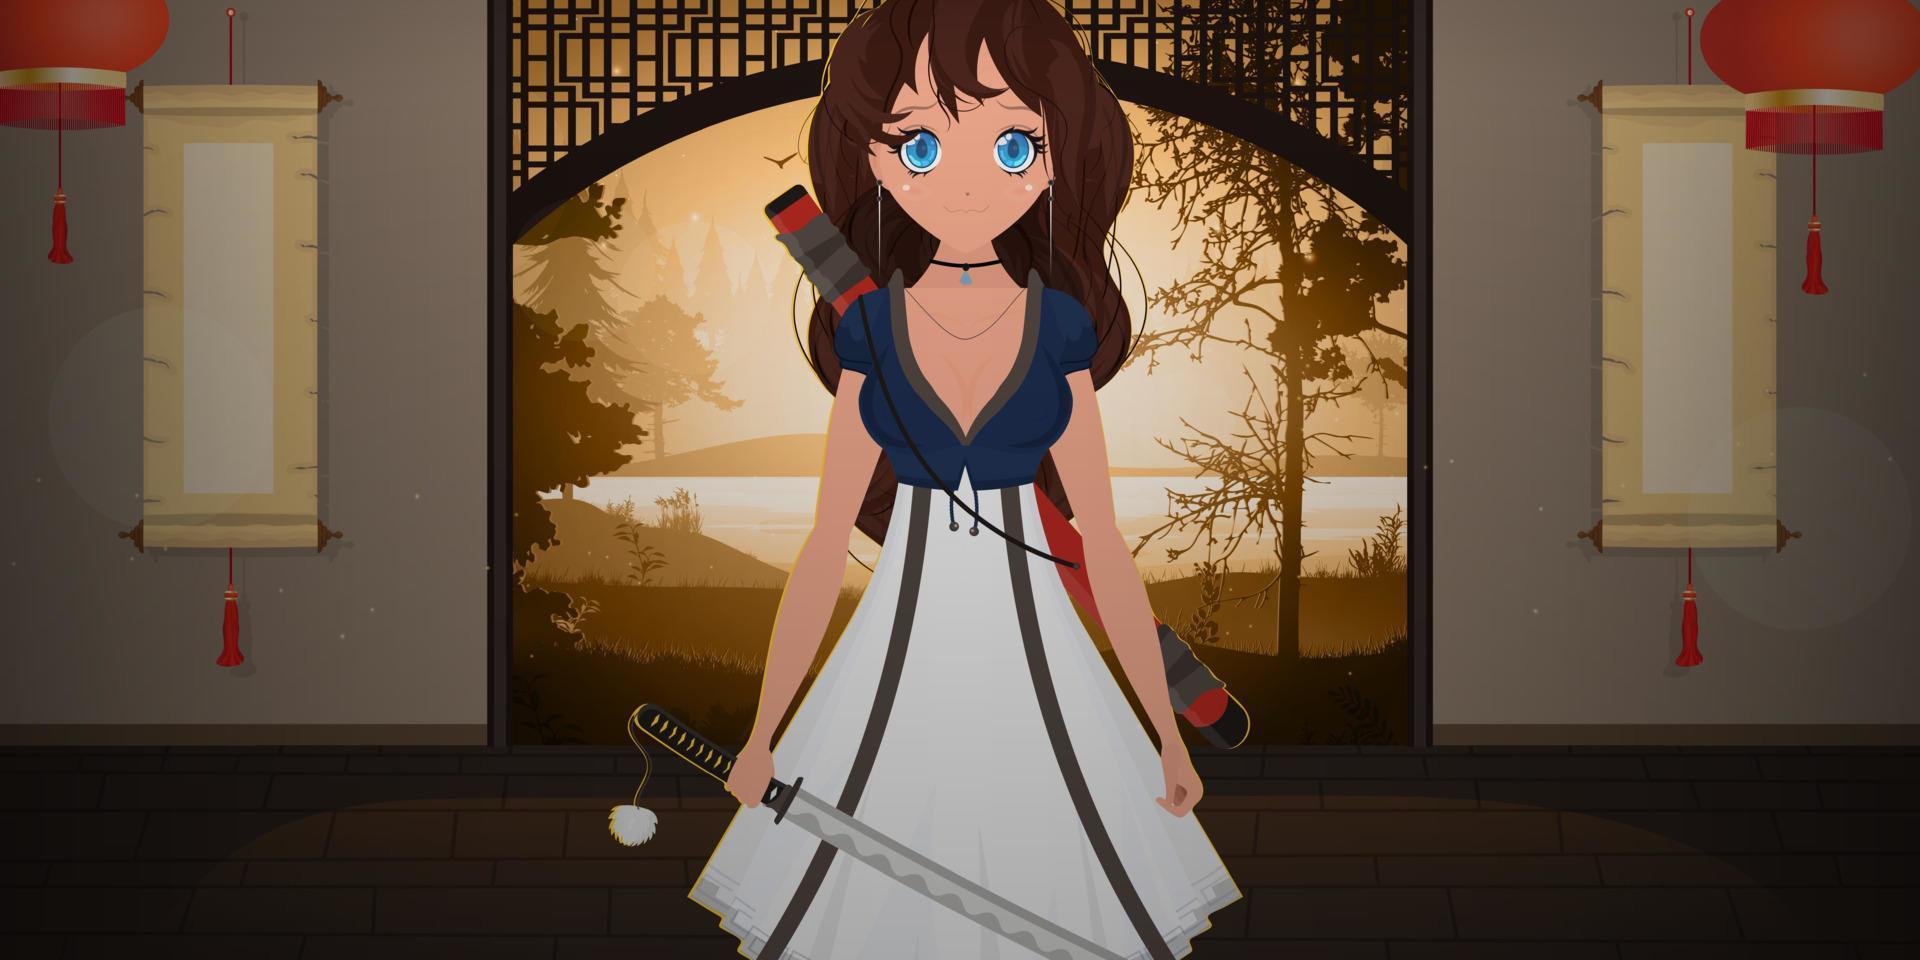 una chica con una katana vestida de azul y blanco se encuentra en una habitación japonesa. anime mujer samurái. estilo de dibujos animados, ilustración vectorial. vector